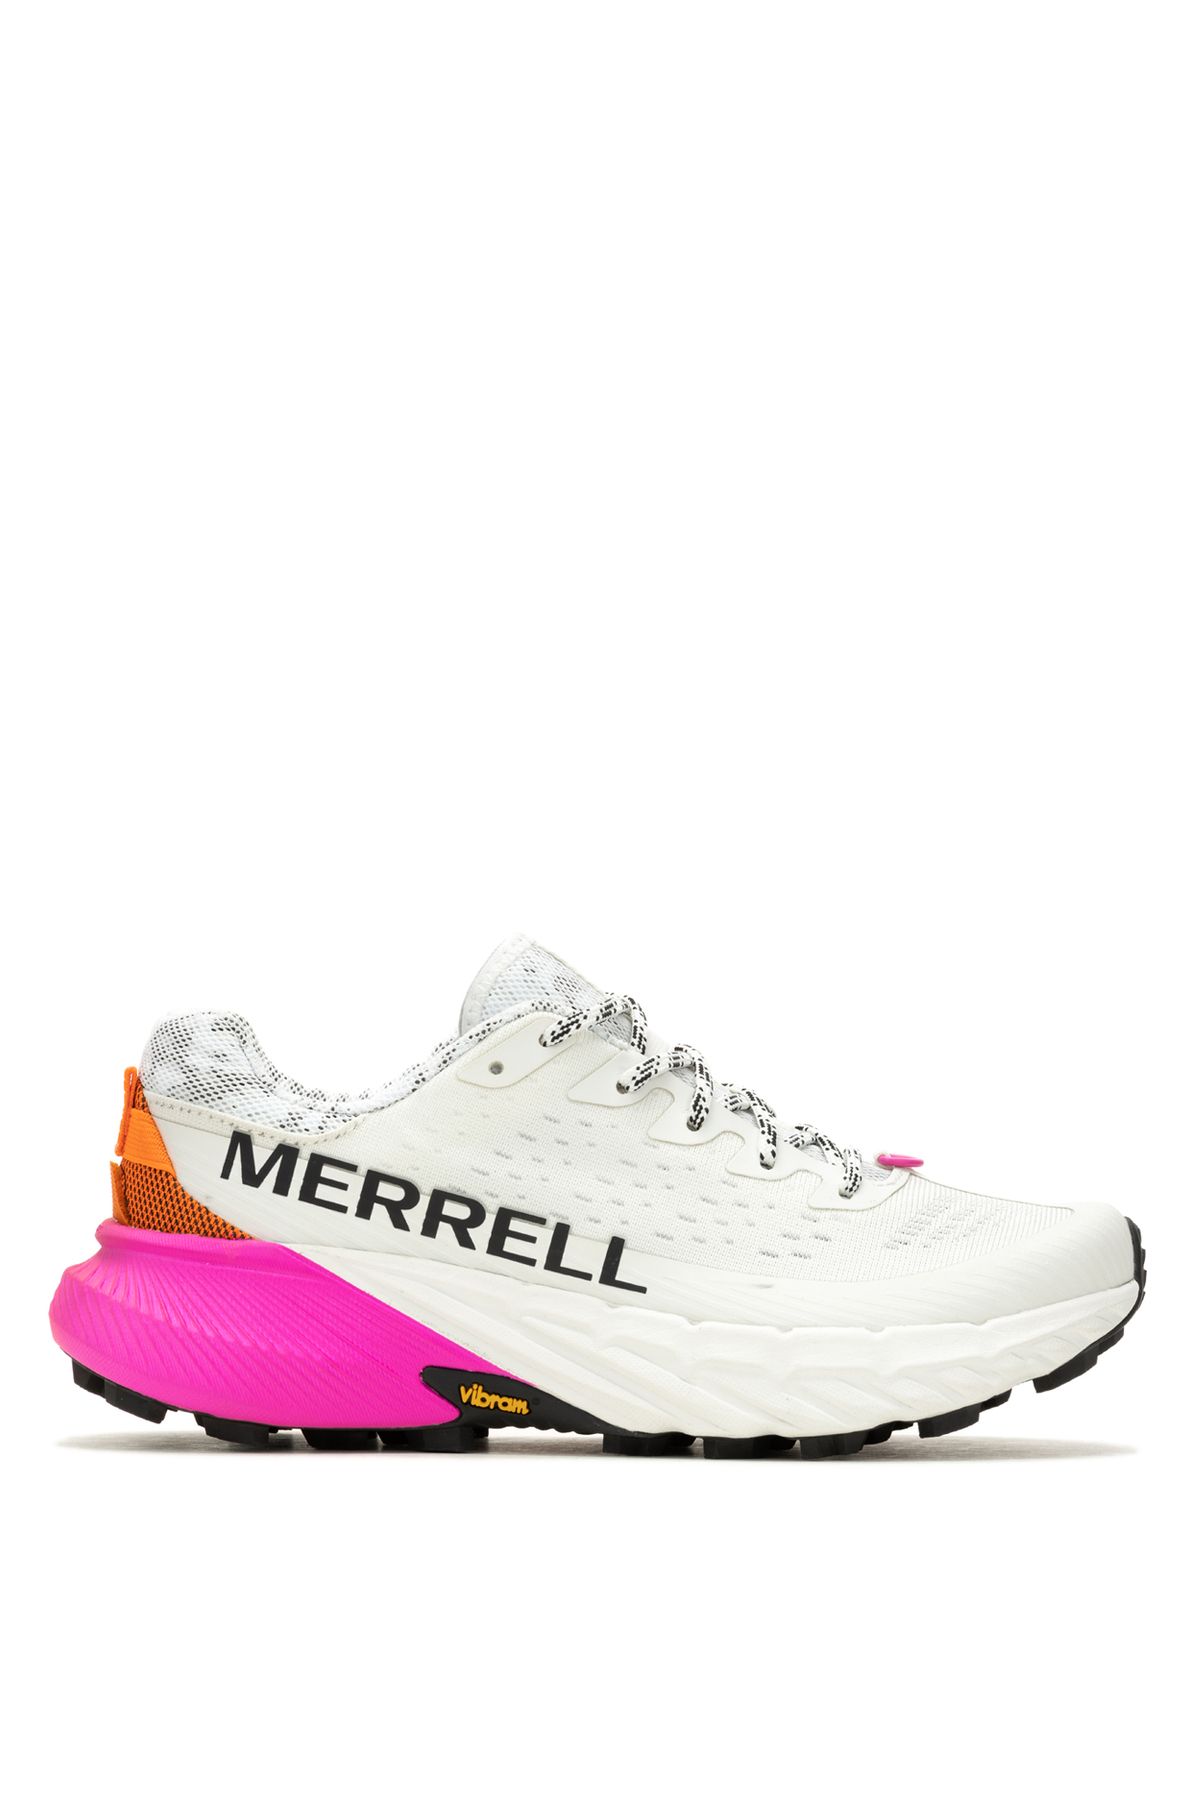 Merrell Beyaz Kadın Koşu Ayakkabısı J068234_AGILITY PEAK 5